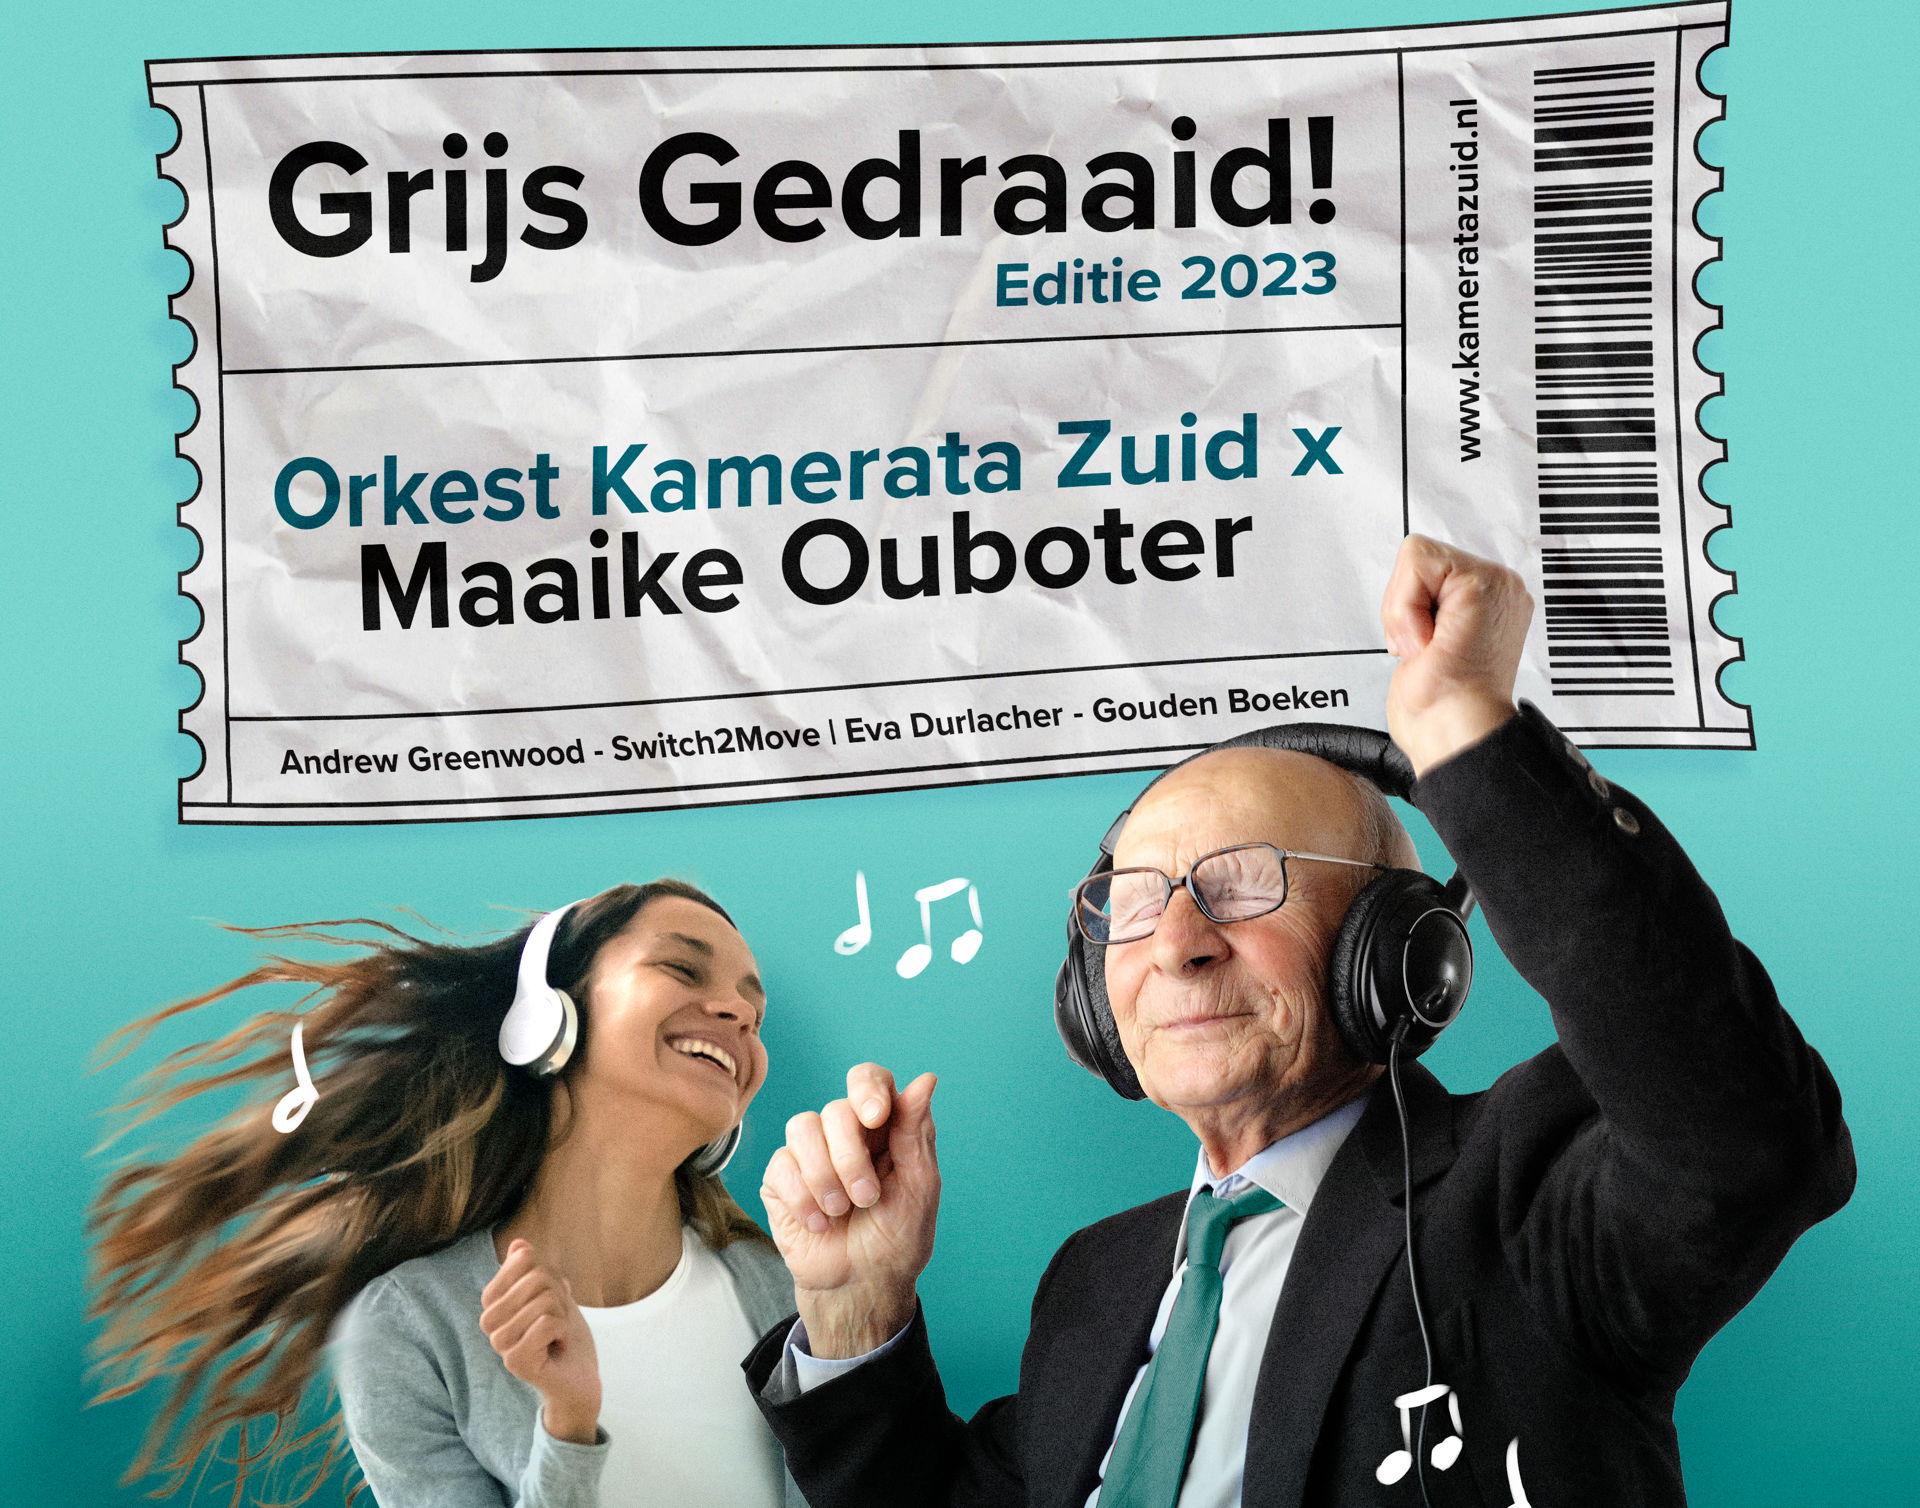 Grijs Gedraaid - 2023 in De Tamboer